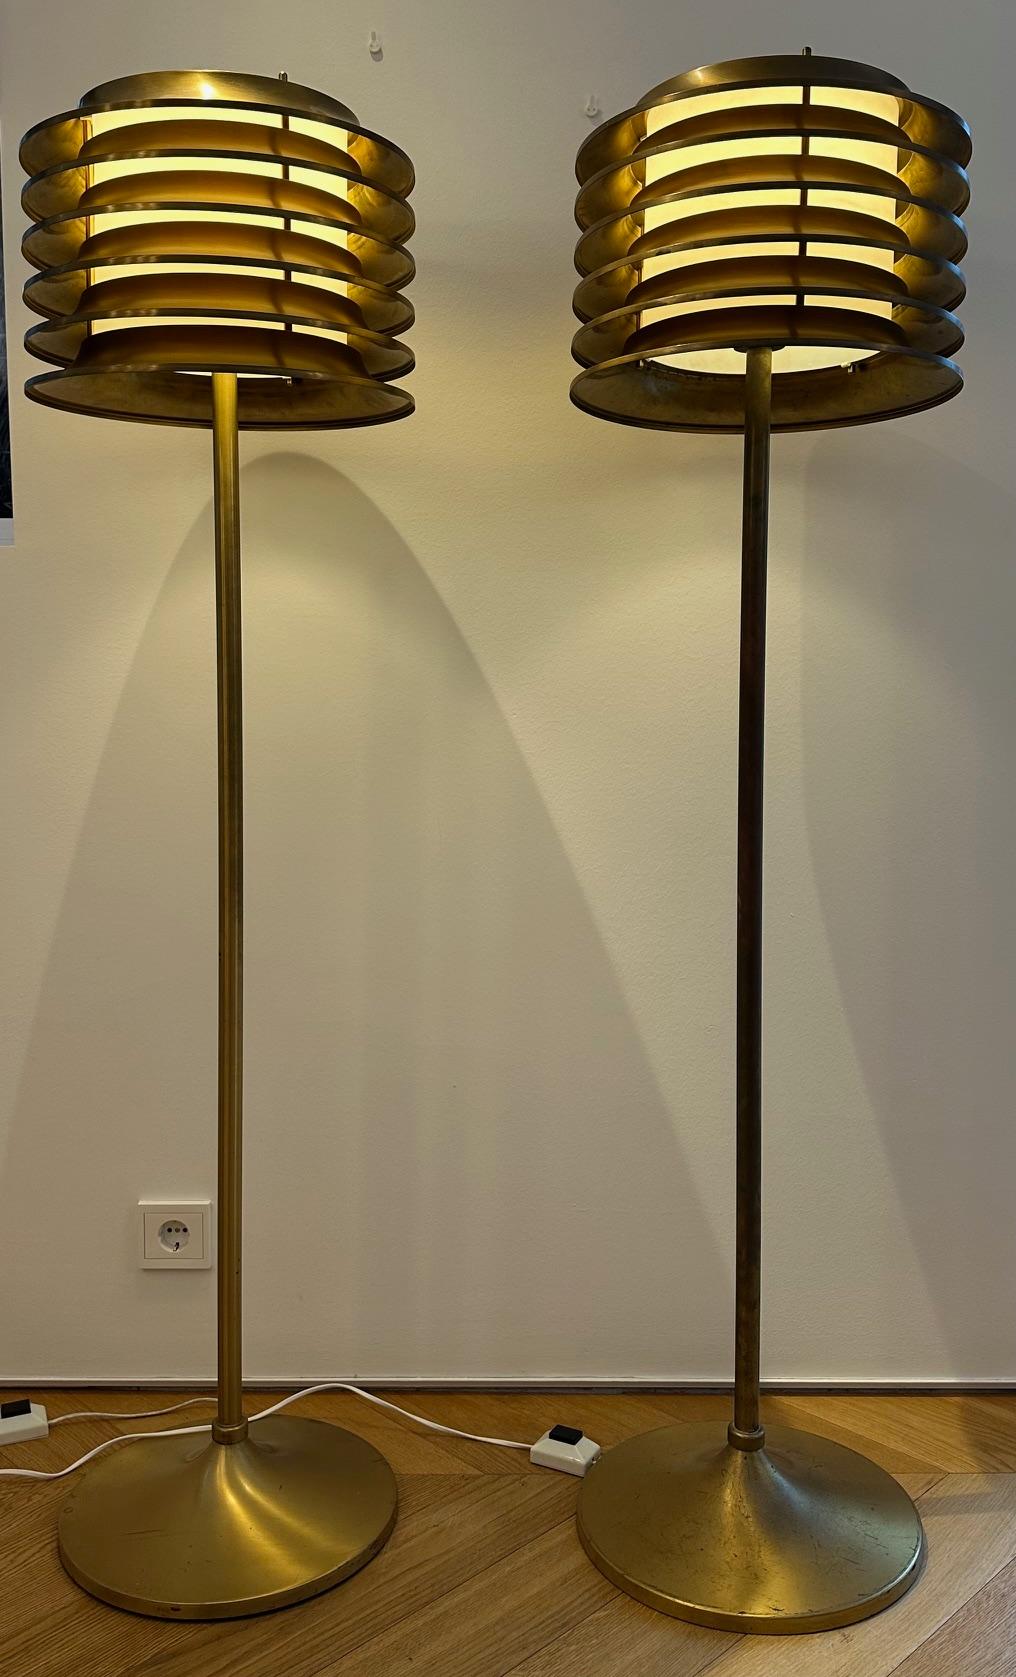 Diese Lampen wurden in den 1970er Jahren von Kai Ruokonen (Finnmark) für das Vaakuna Hotel in Helsinki entworfen.  Eine sehr schlichte, aber elegante Schwerlastlampe aus Messing mit schöner Patina.

Dies ist eine einzigartige Gelegenheit, ein Paar